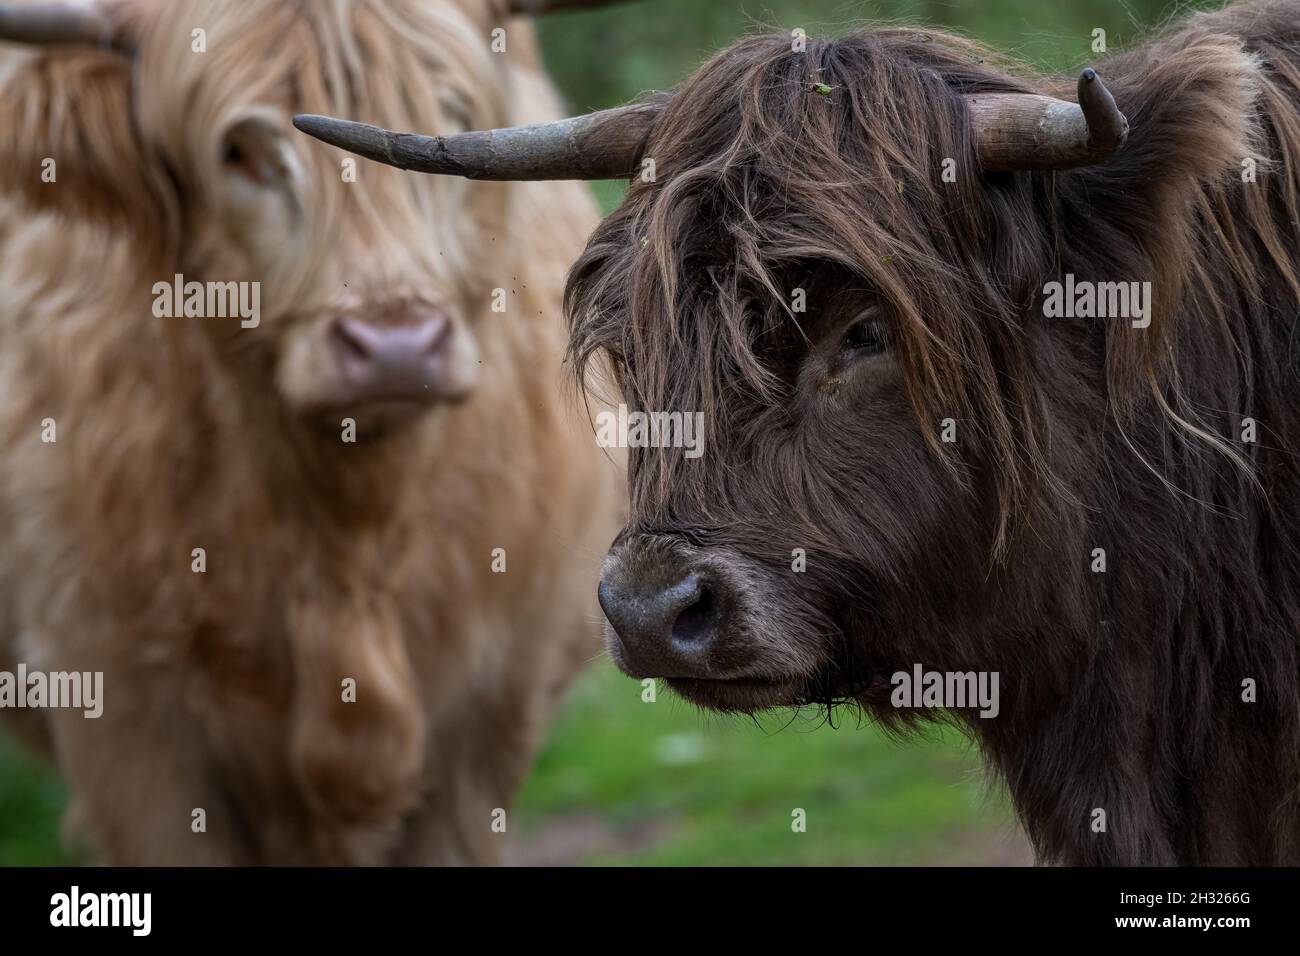 Eine wunderschöne gehörnte schottische Highland Cow in einer natürlichen ländlichen Umgebung. Stockfoto